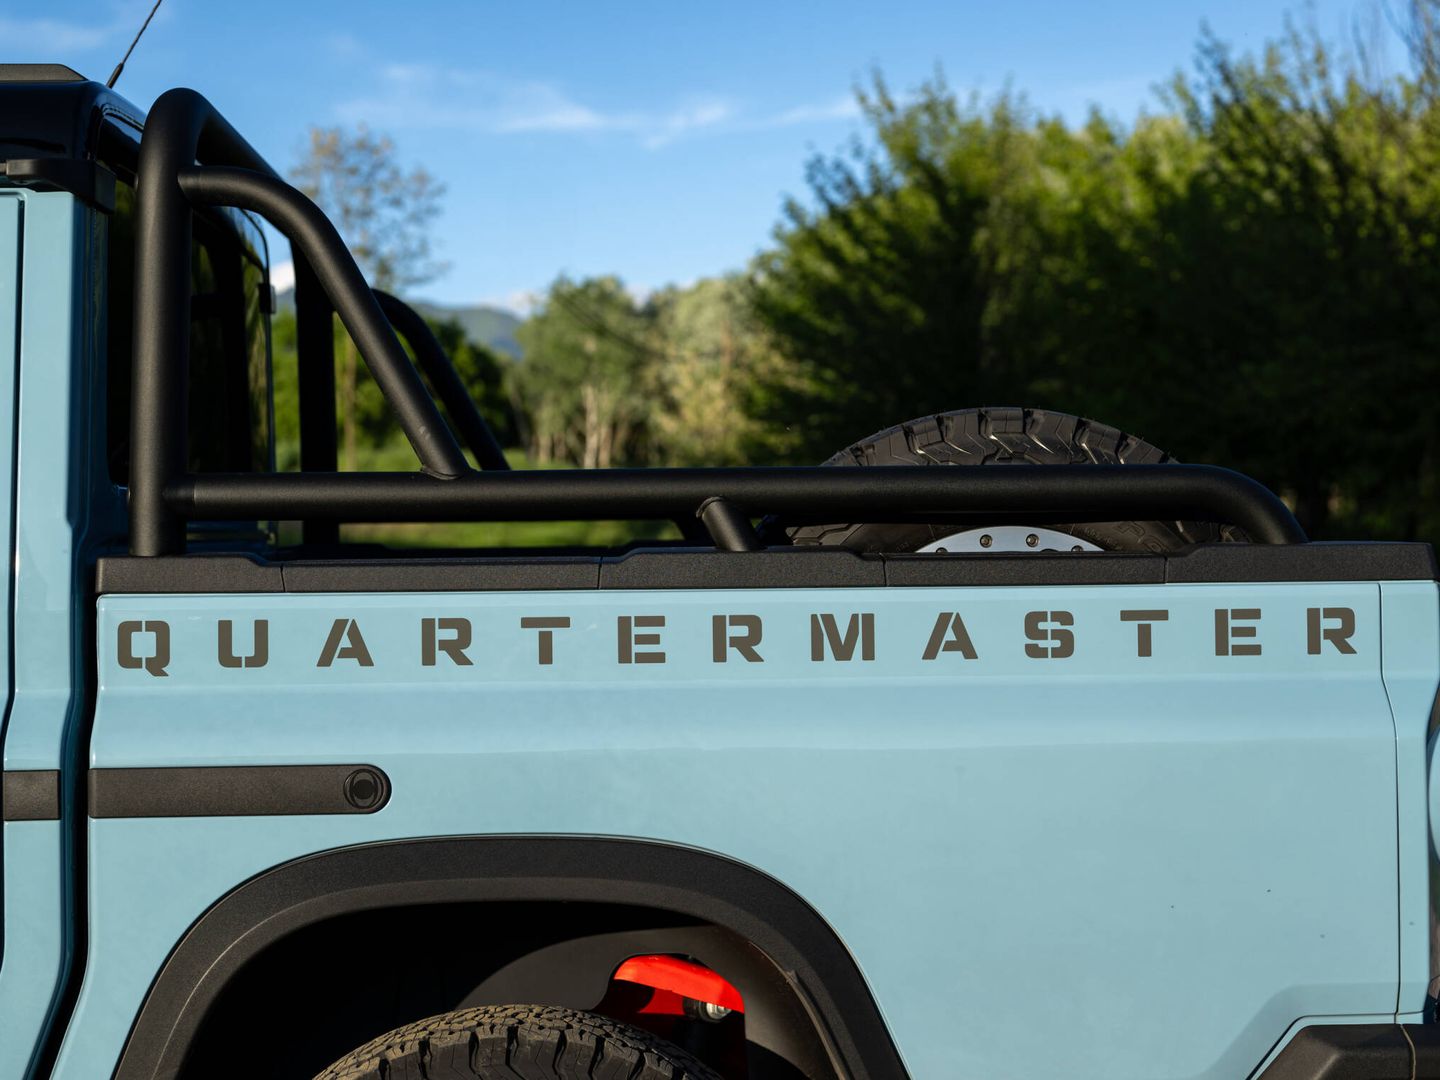 Quartermaster ya ocupa todo el largo de la caja. Y el coche se llama Grenadier Quartermaster.